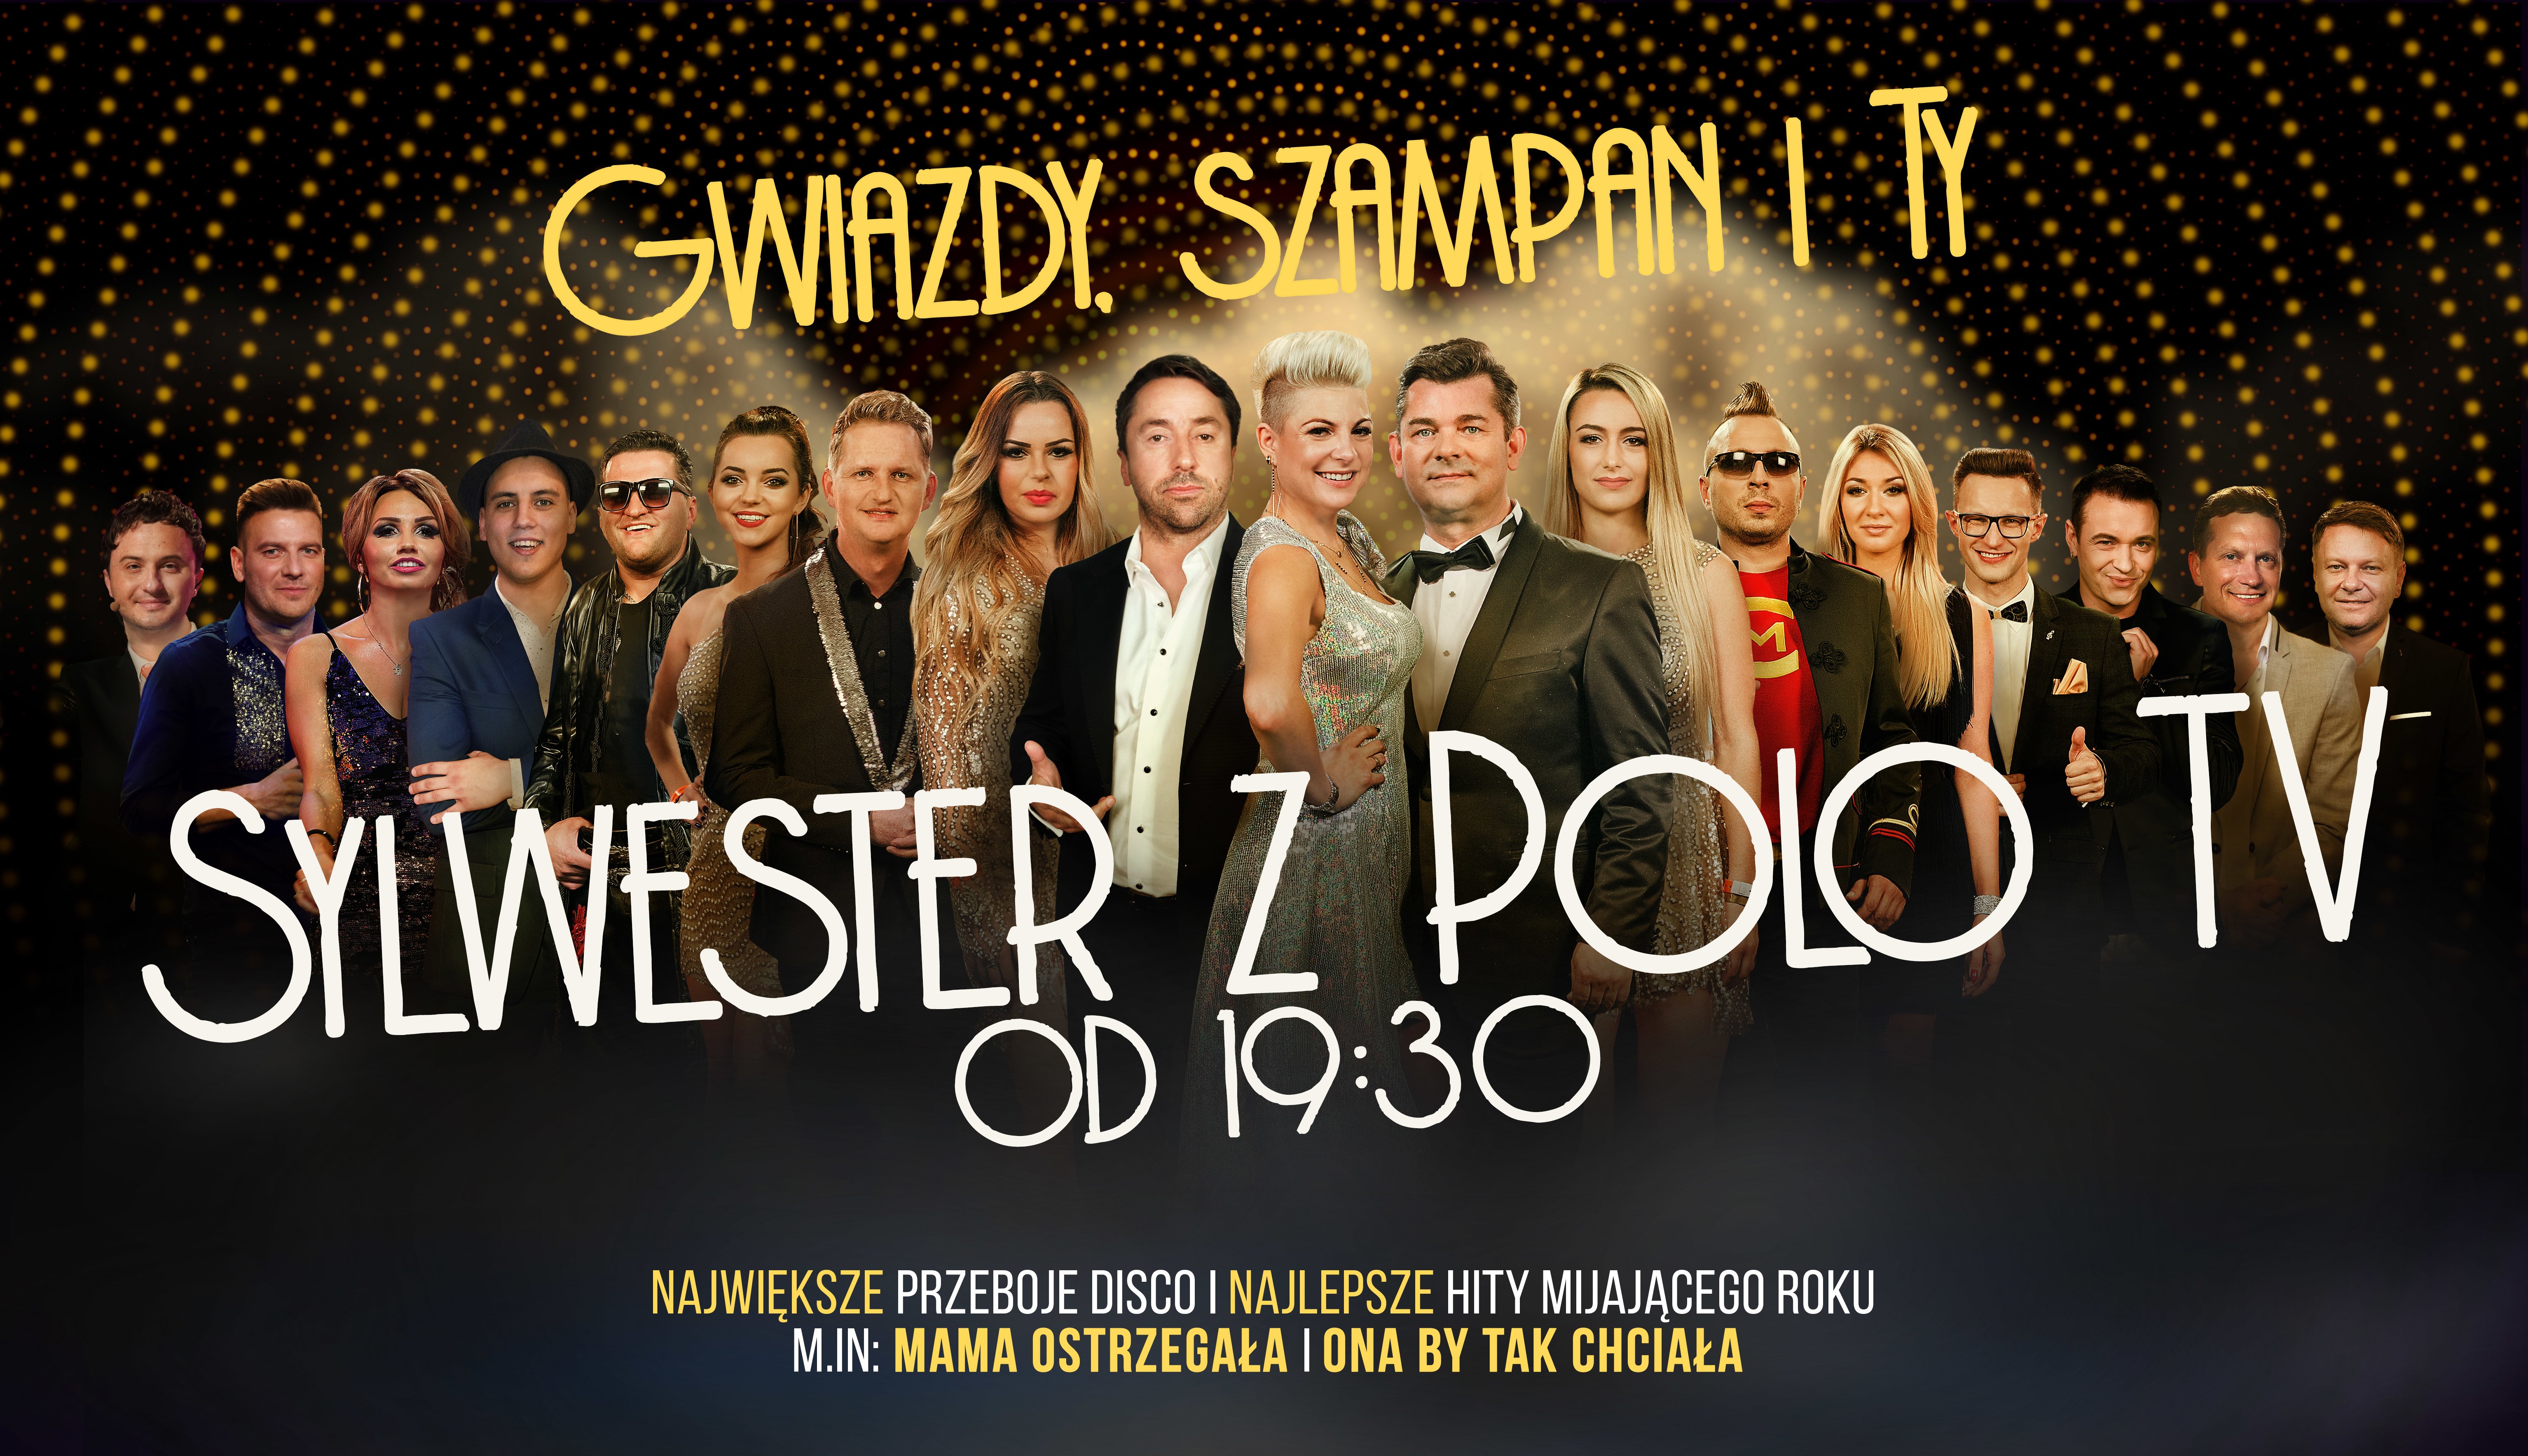 Największy Sylwester 2019/2020 z muzyką disco polo na Polo TV! 